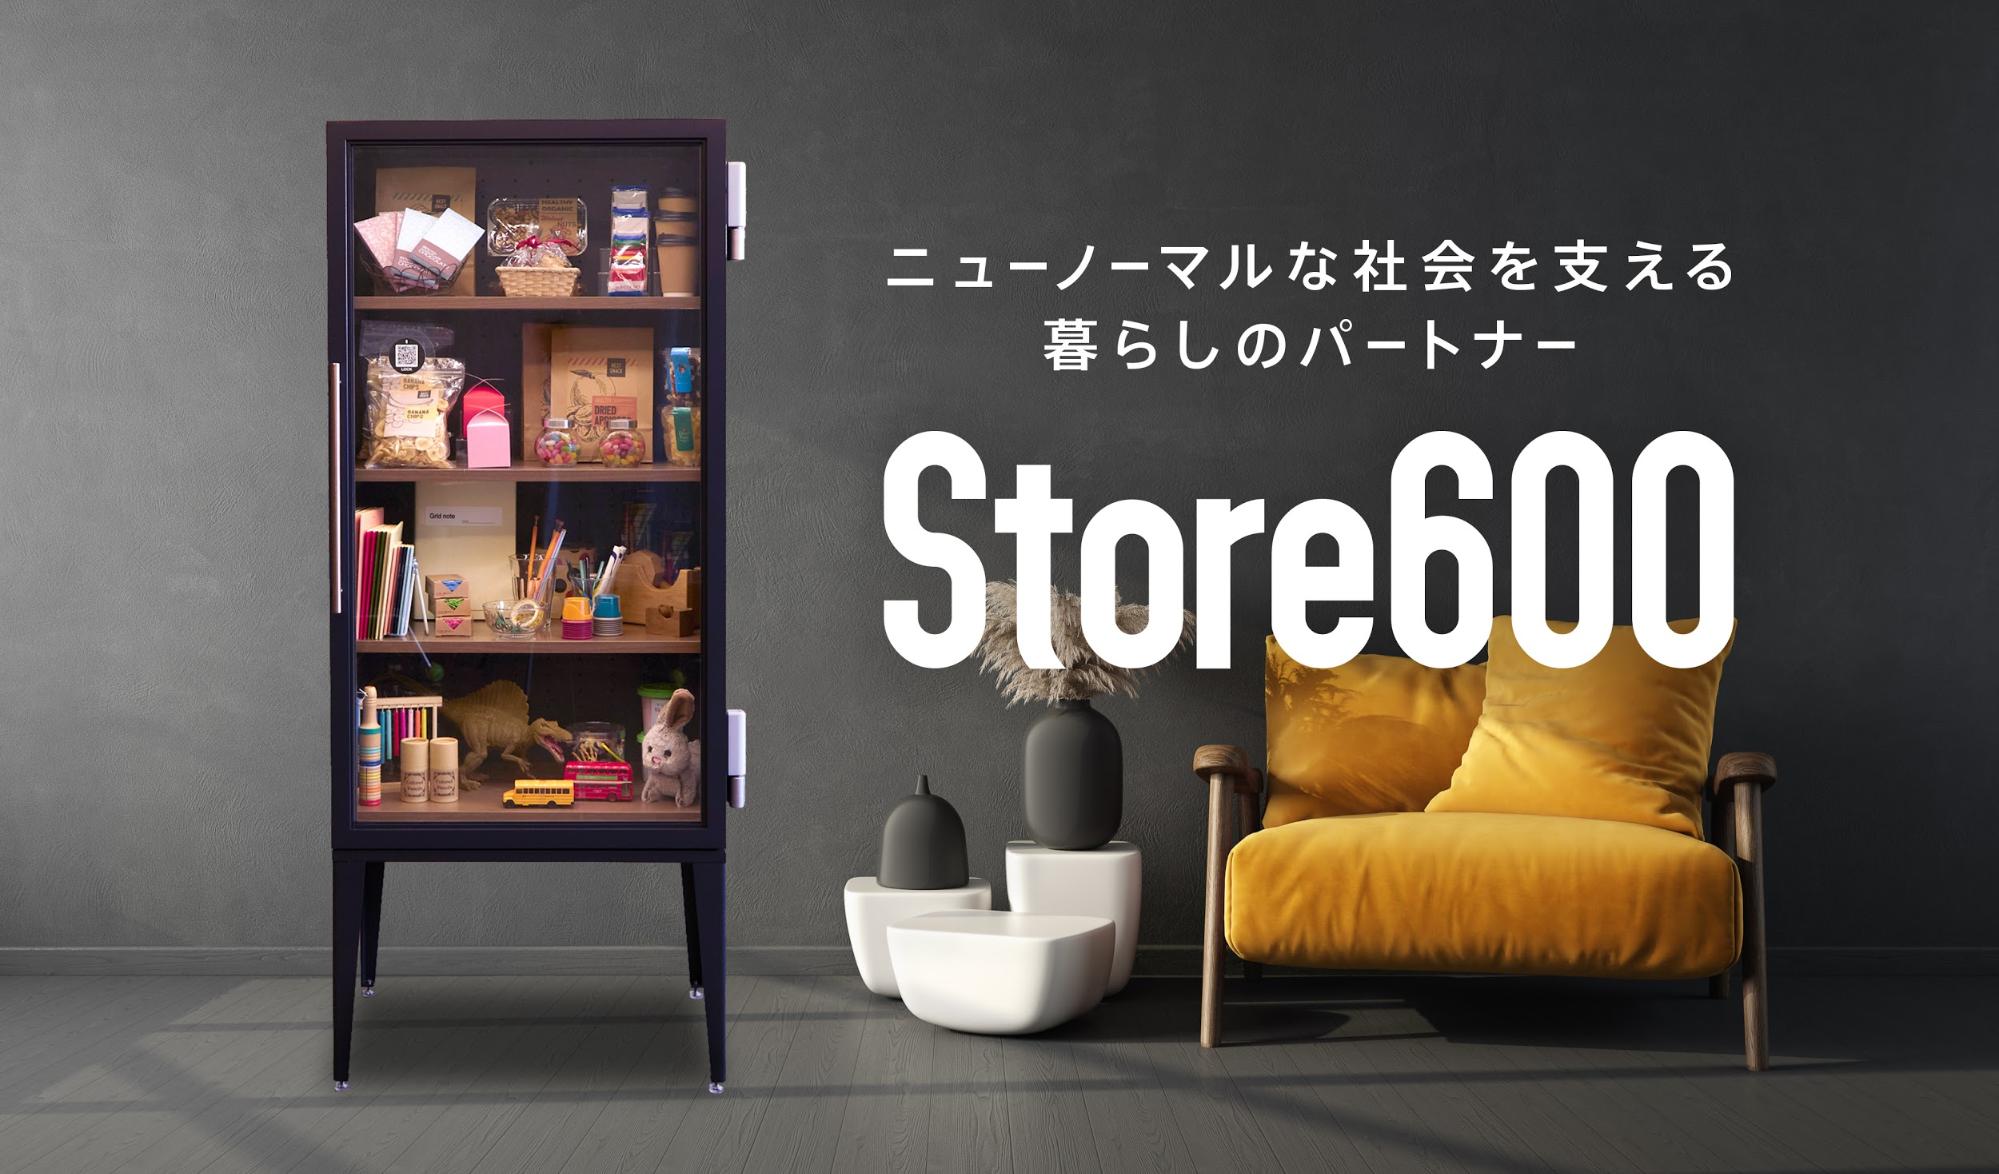 600株式会社、マンション専用新サービスとして「Store600」をリリース